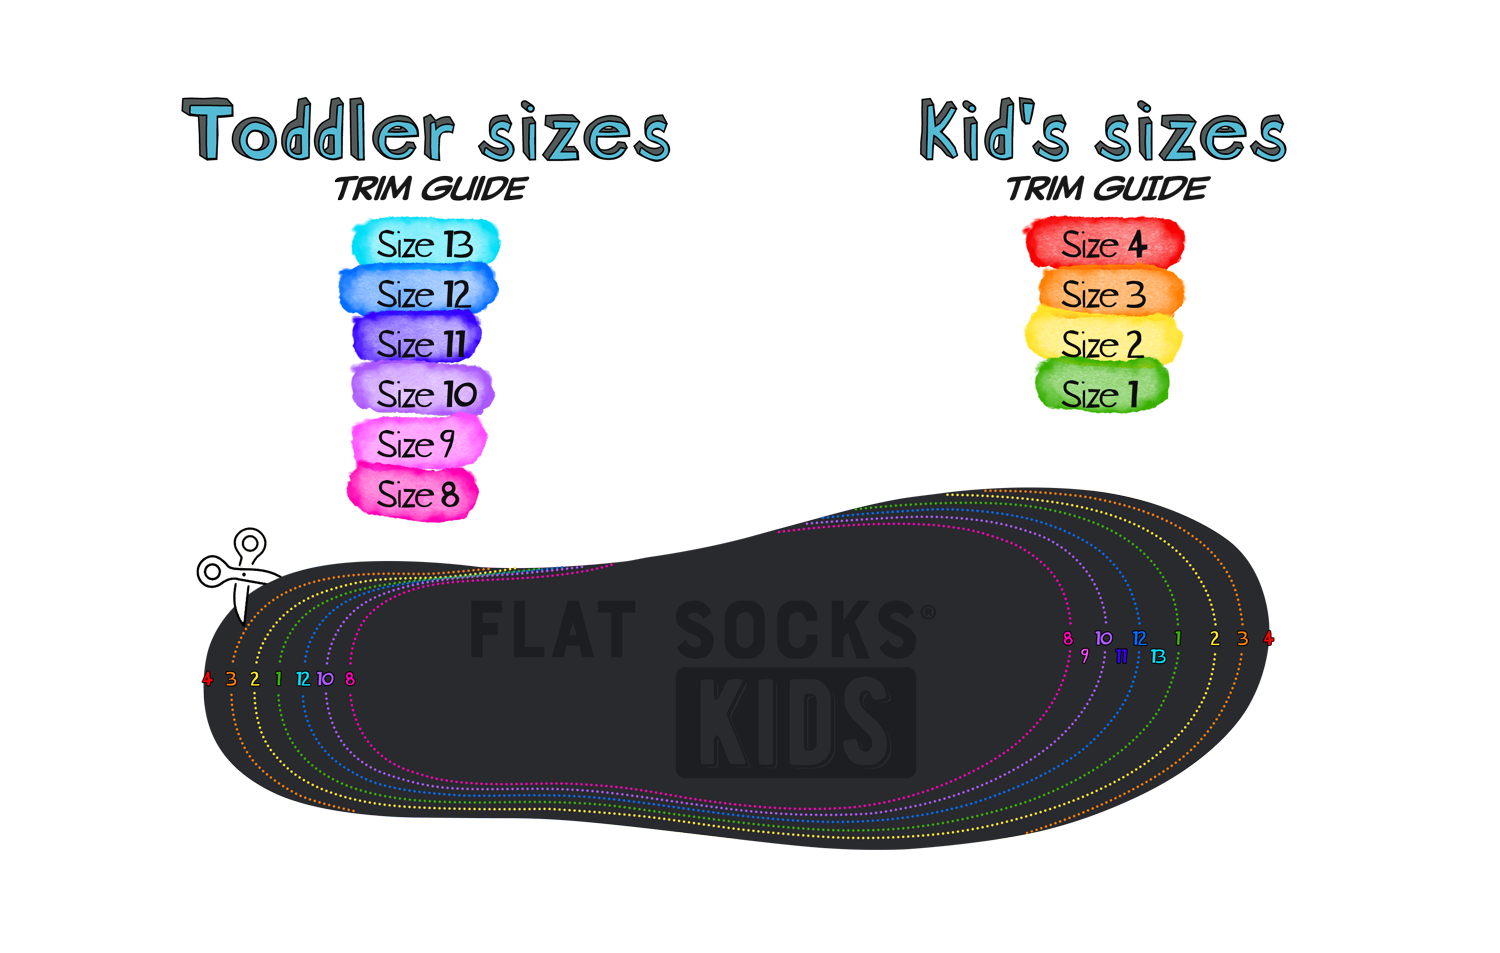 FLAT SOCKS Kids trim guides